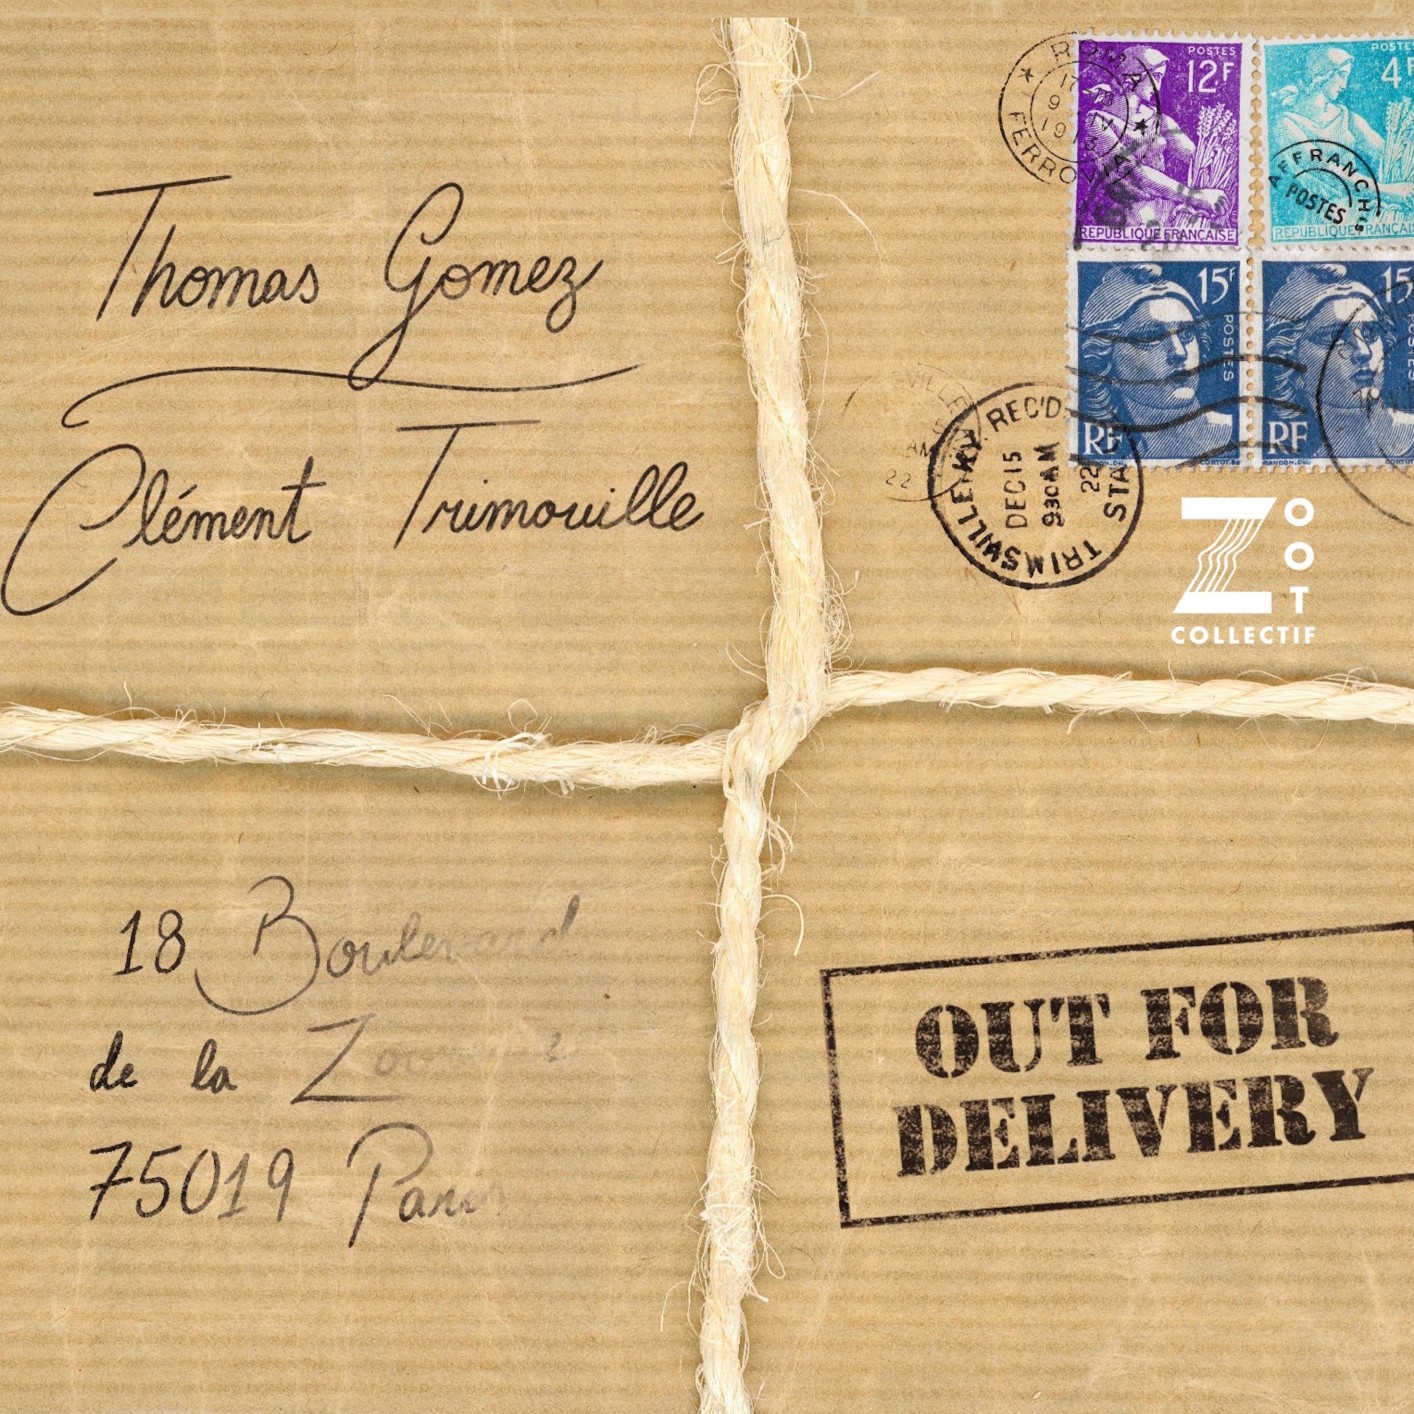 Thomas Gomez, Clément Trimouille, Clément Daldosso, Malte Arndal, Zoot Collectif - Out for Delivery (2022) [FLAC 24bit/44,1kHz]